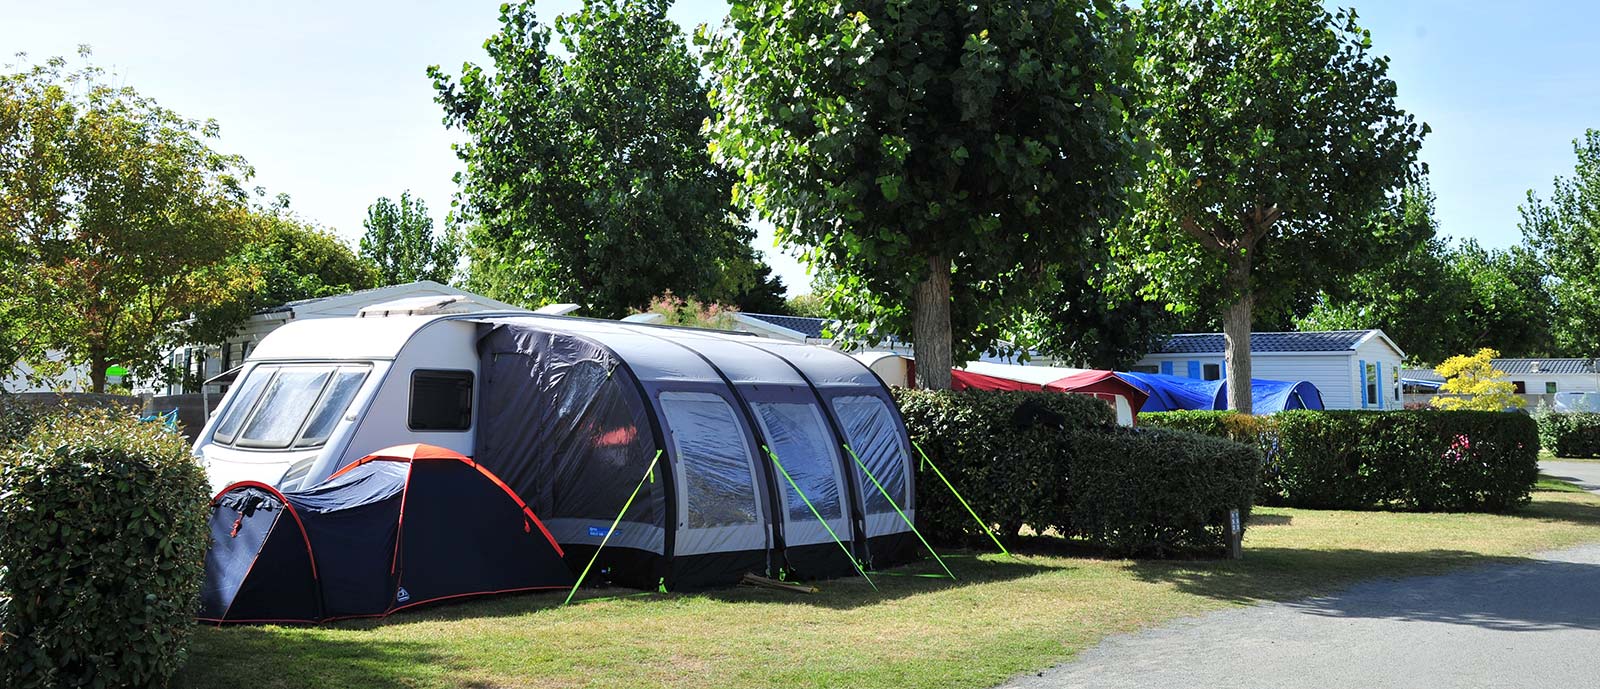 Grande tente sur un emplacement de camping traditionnel en Vendée